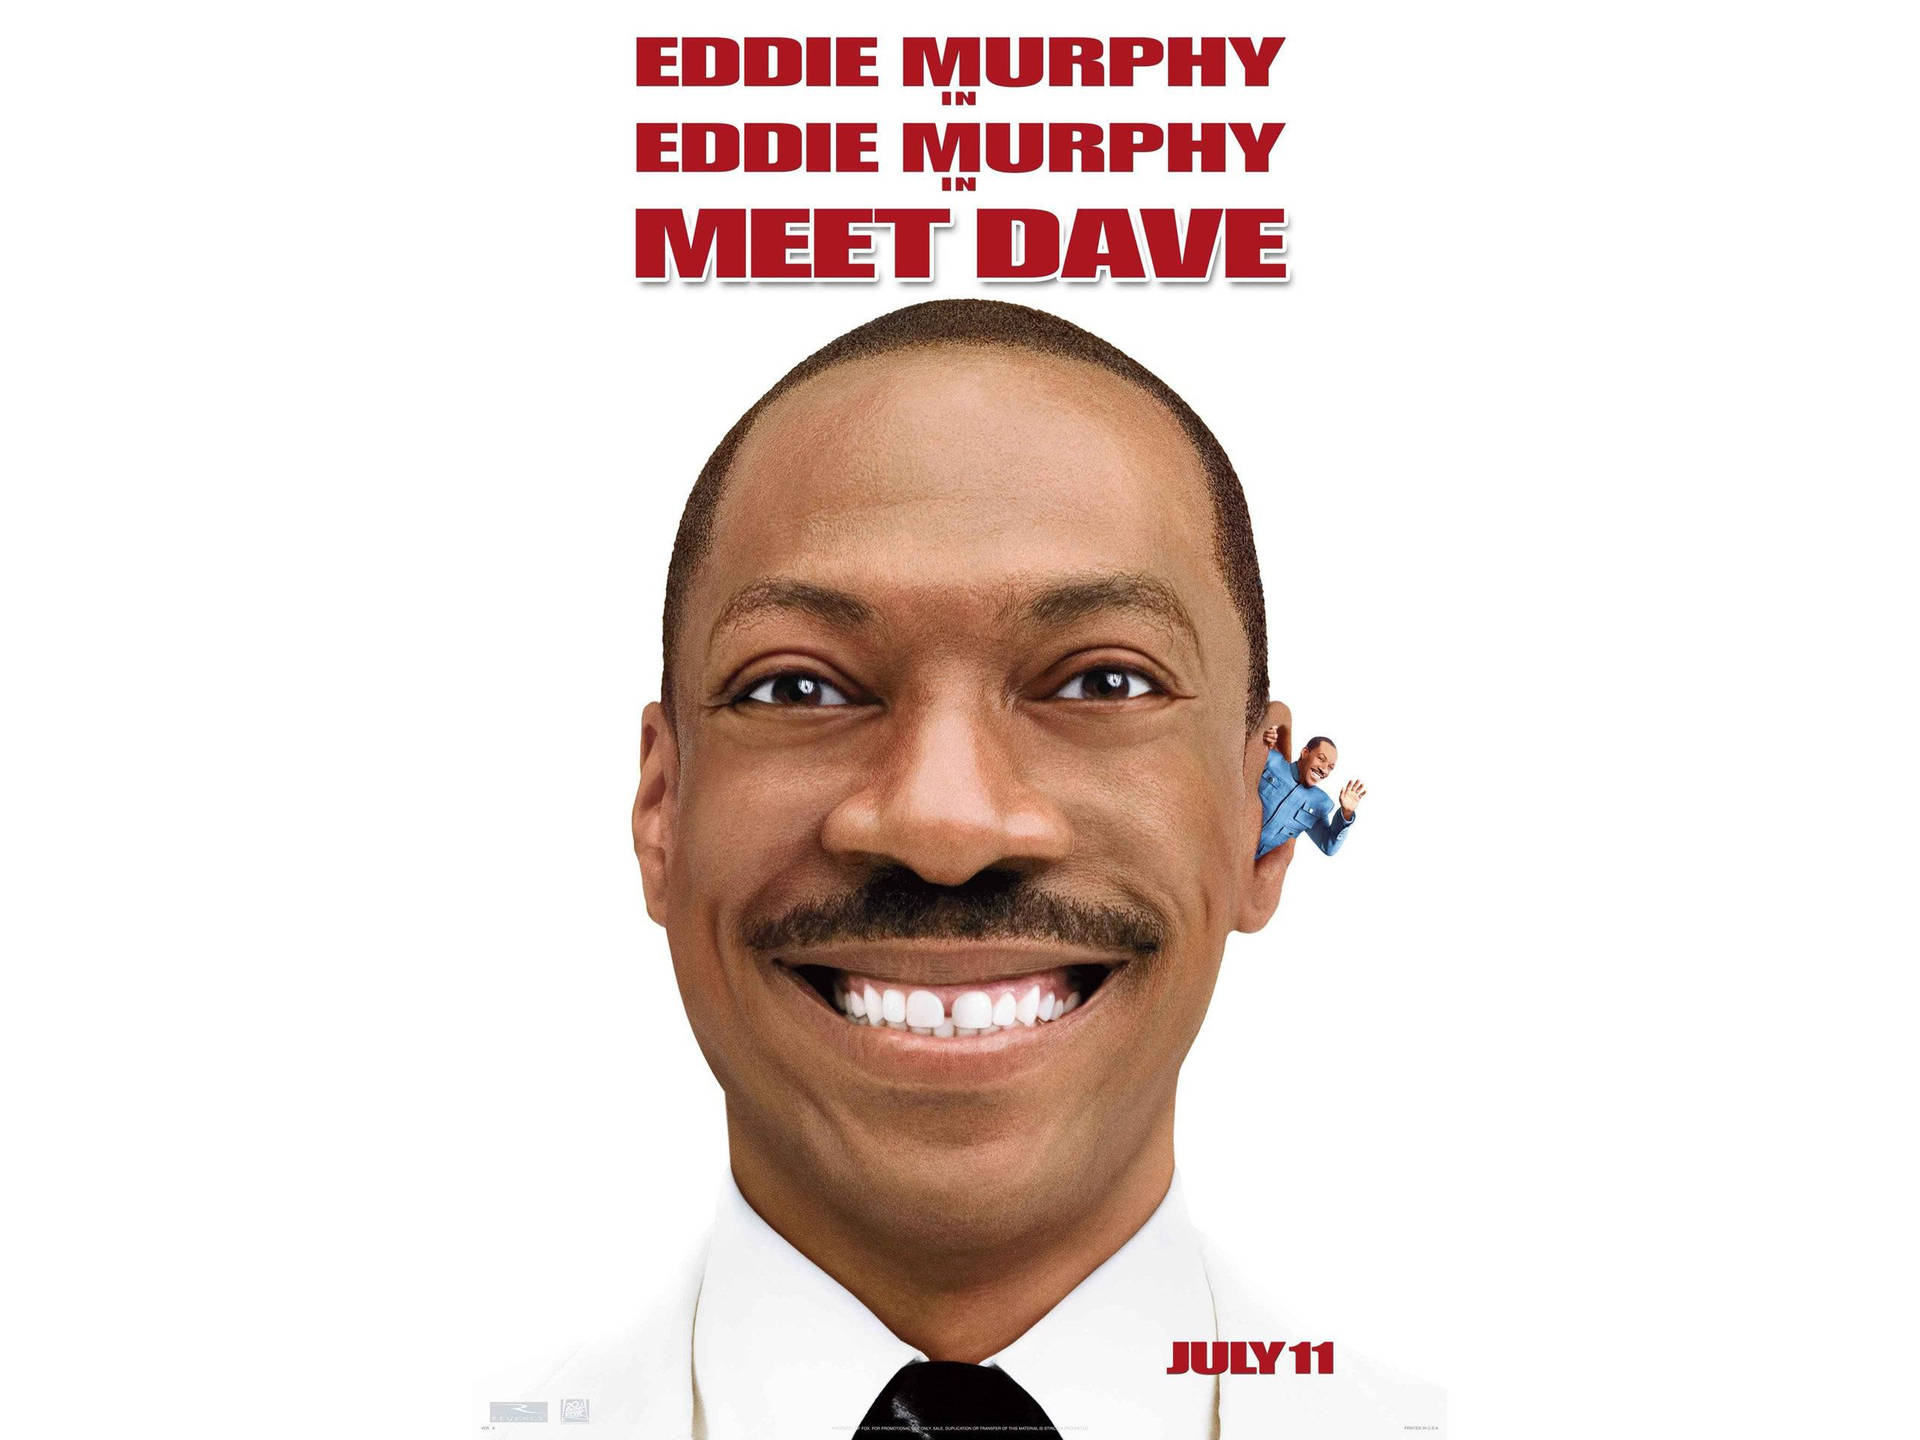 Eddiemurphy Meet Dave Filme - Papel De Parede Para Computador Ou Celular. Papel de Parede